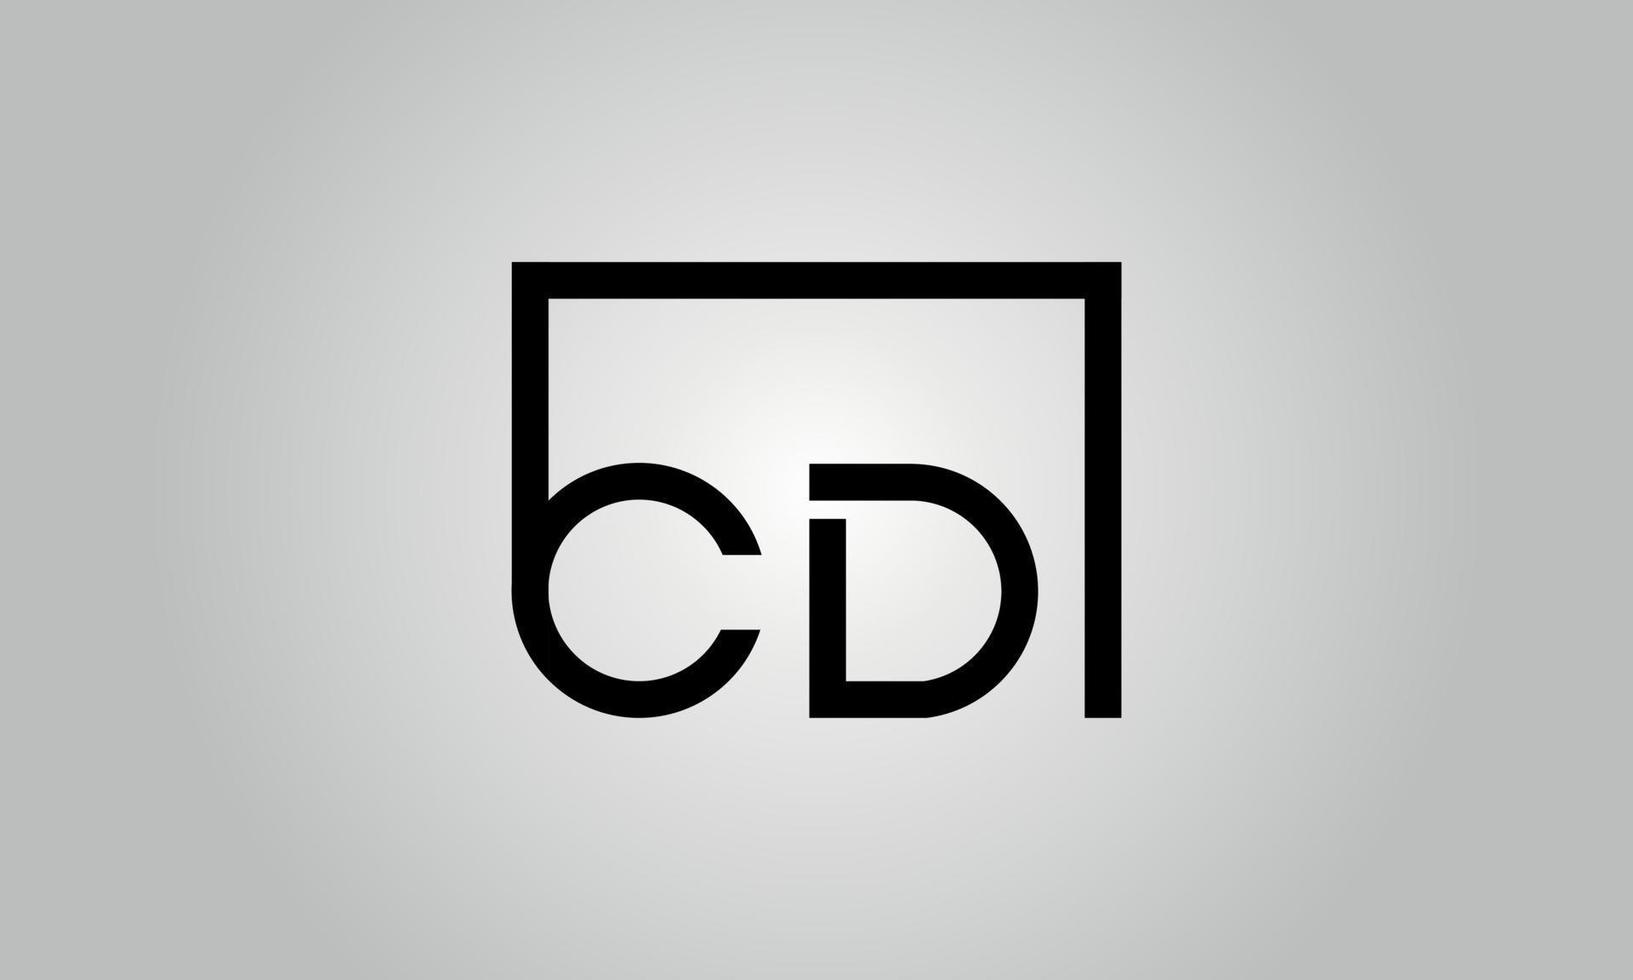 brief CD logo ontwerp. CD logo met plein vorm in zwart kleuren vector vrij vector sjabloon.